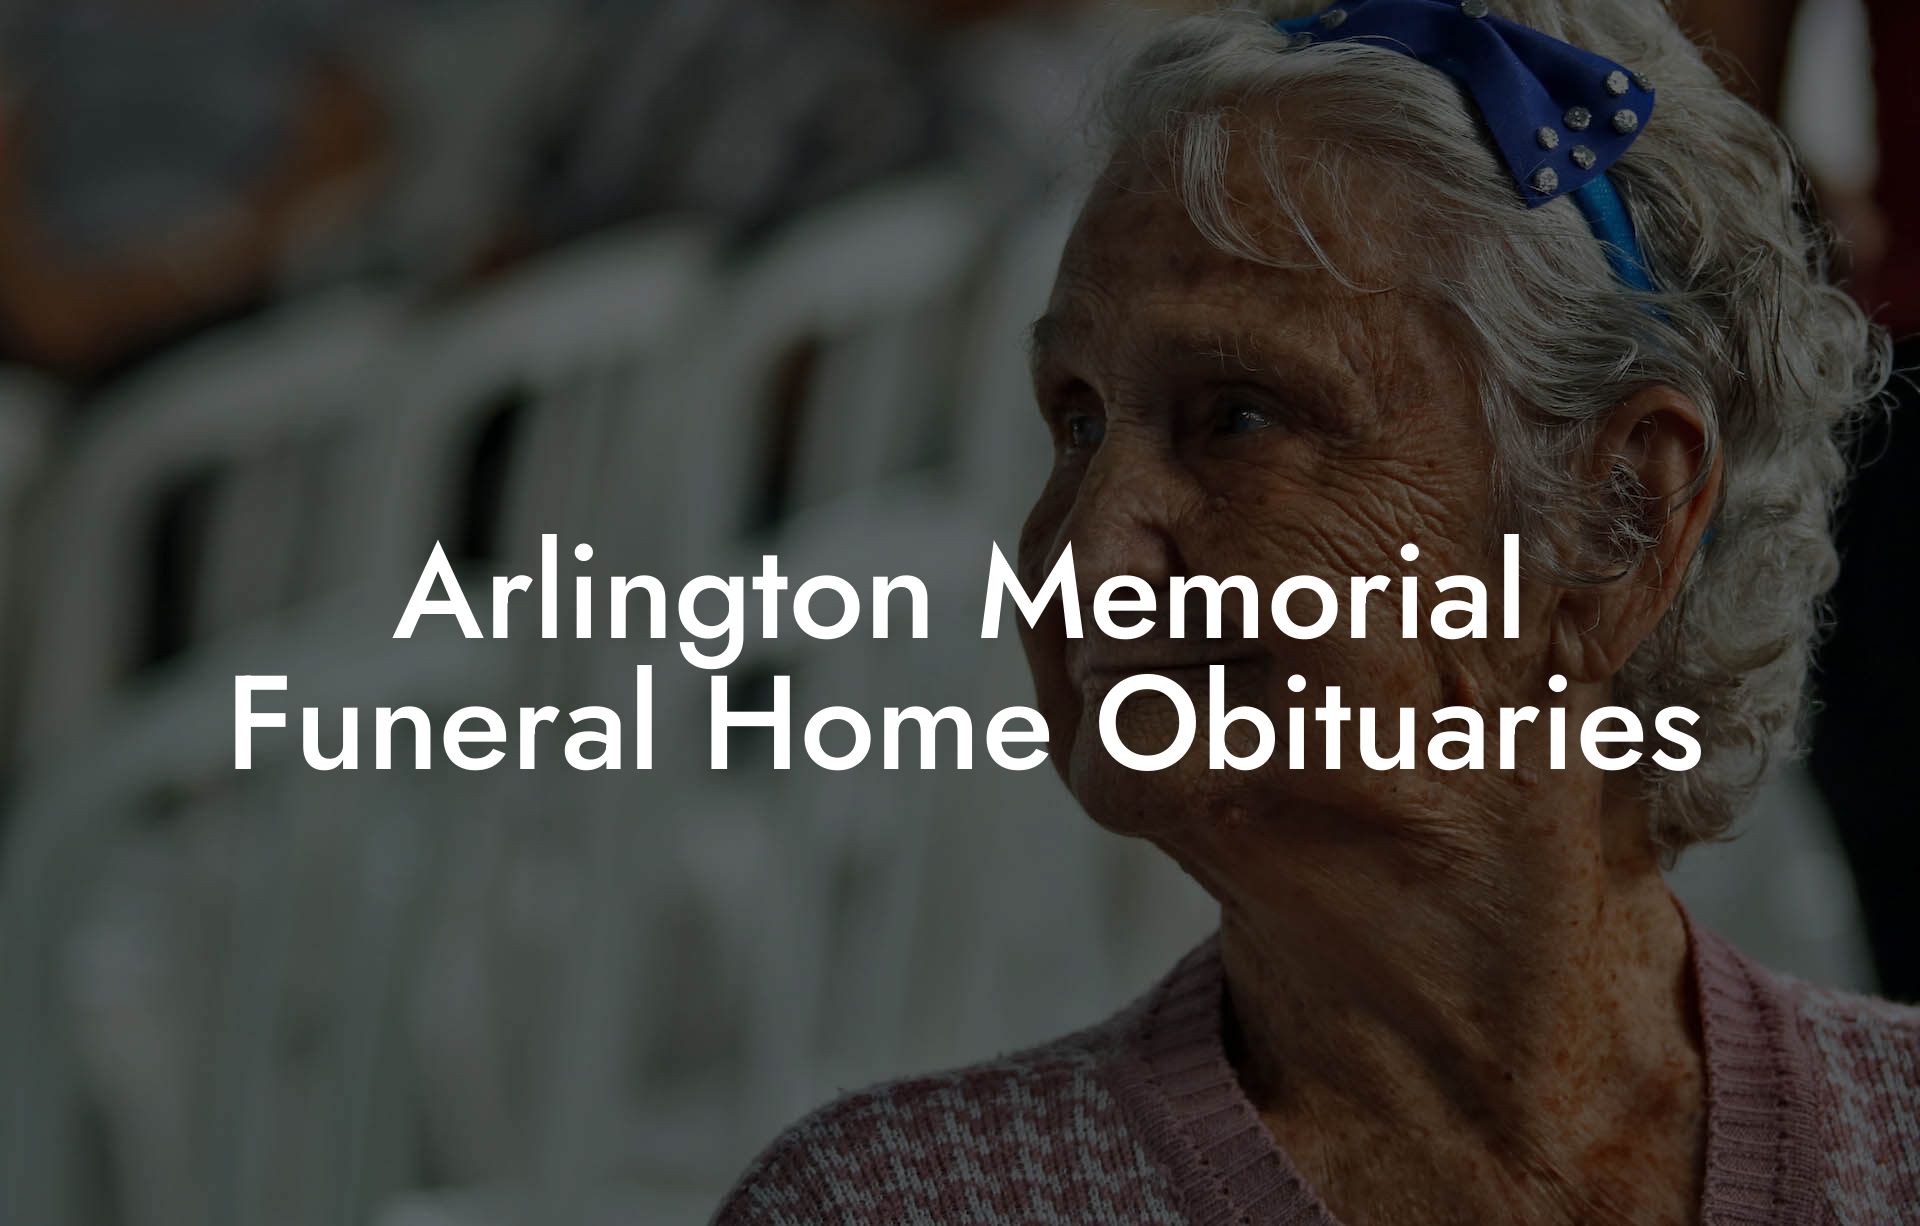 Arlington Memorial Funeral Home Obituaries